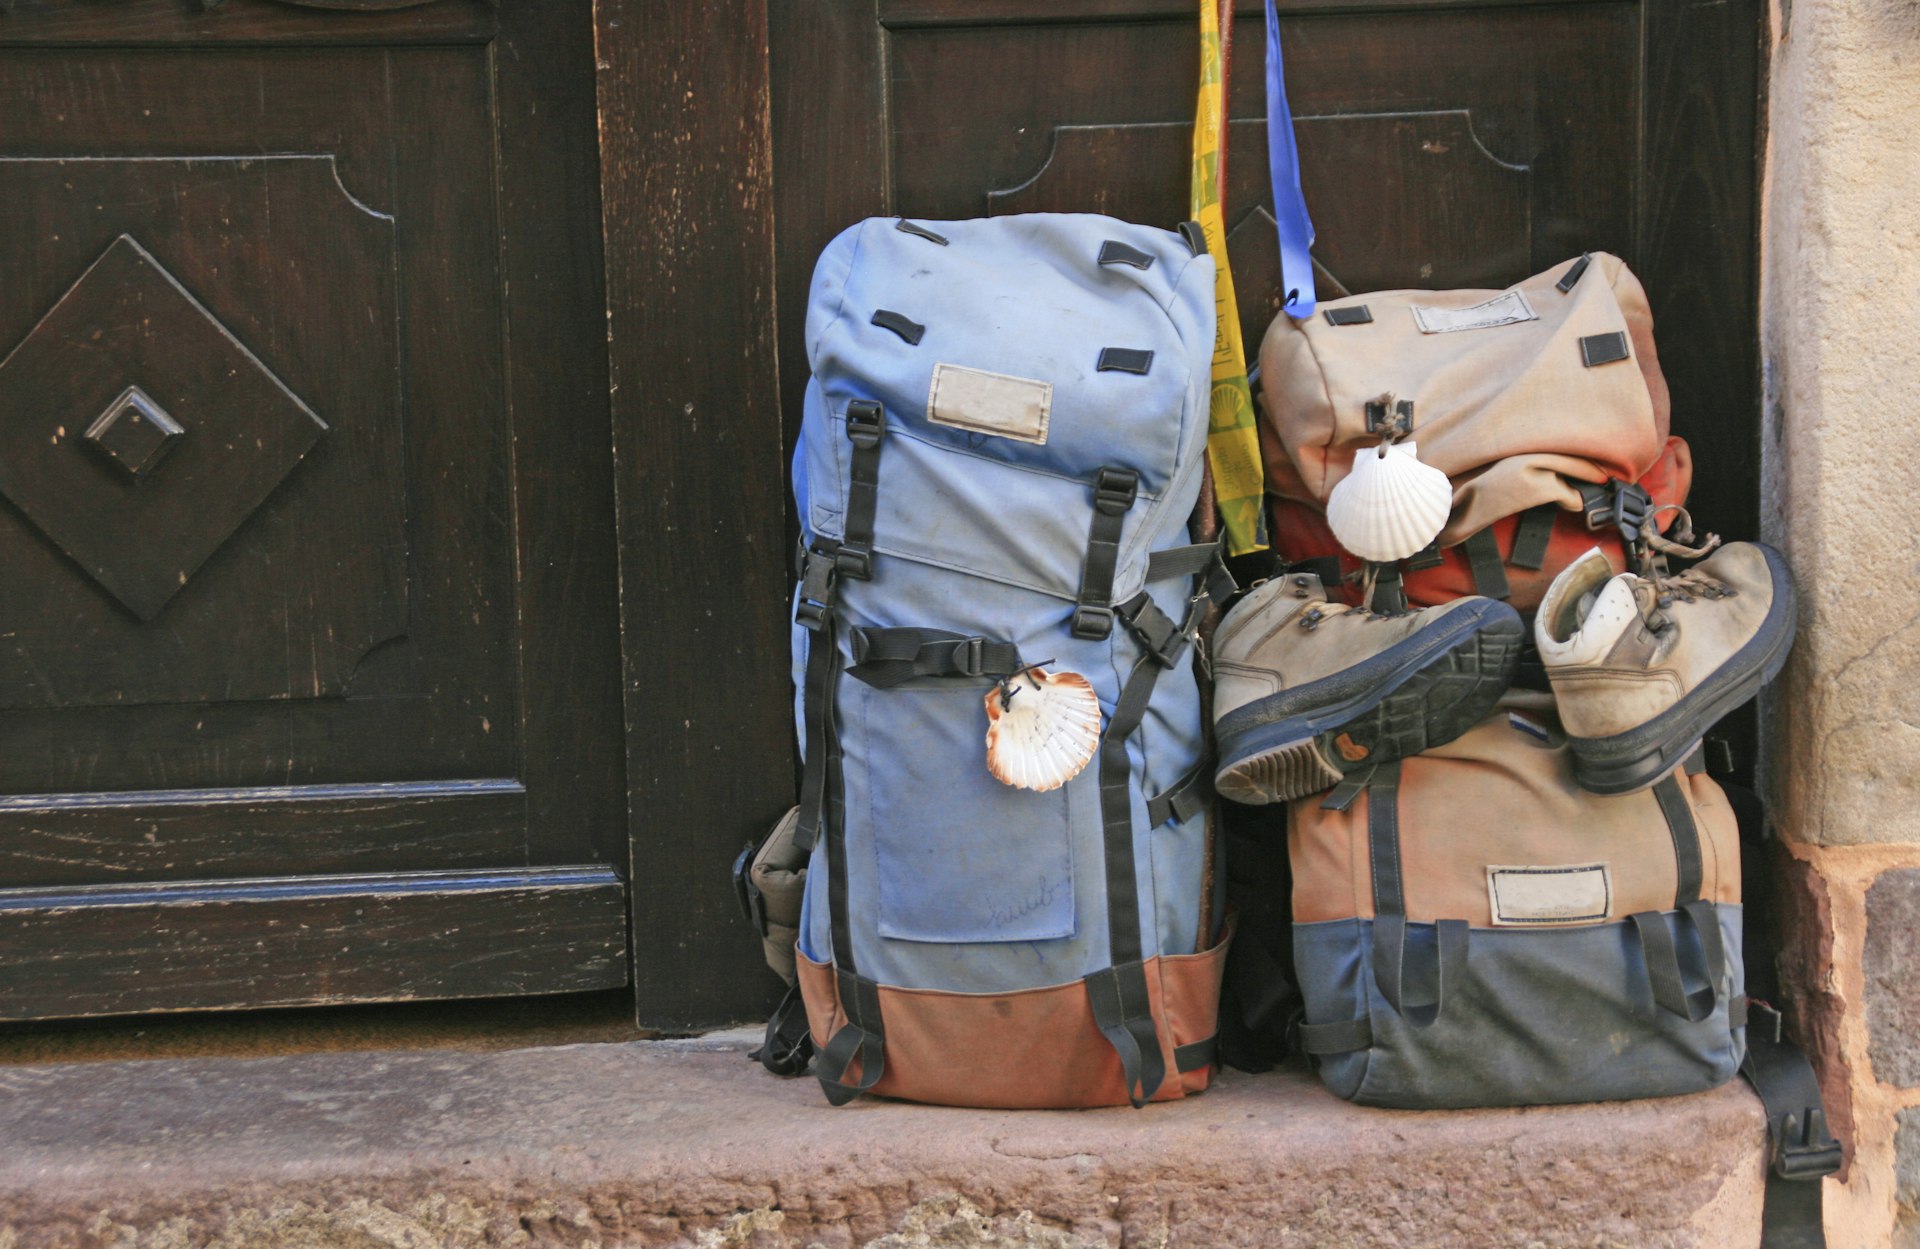 Two backpacks sit in the doorway. 